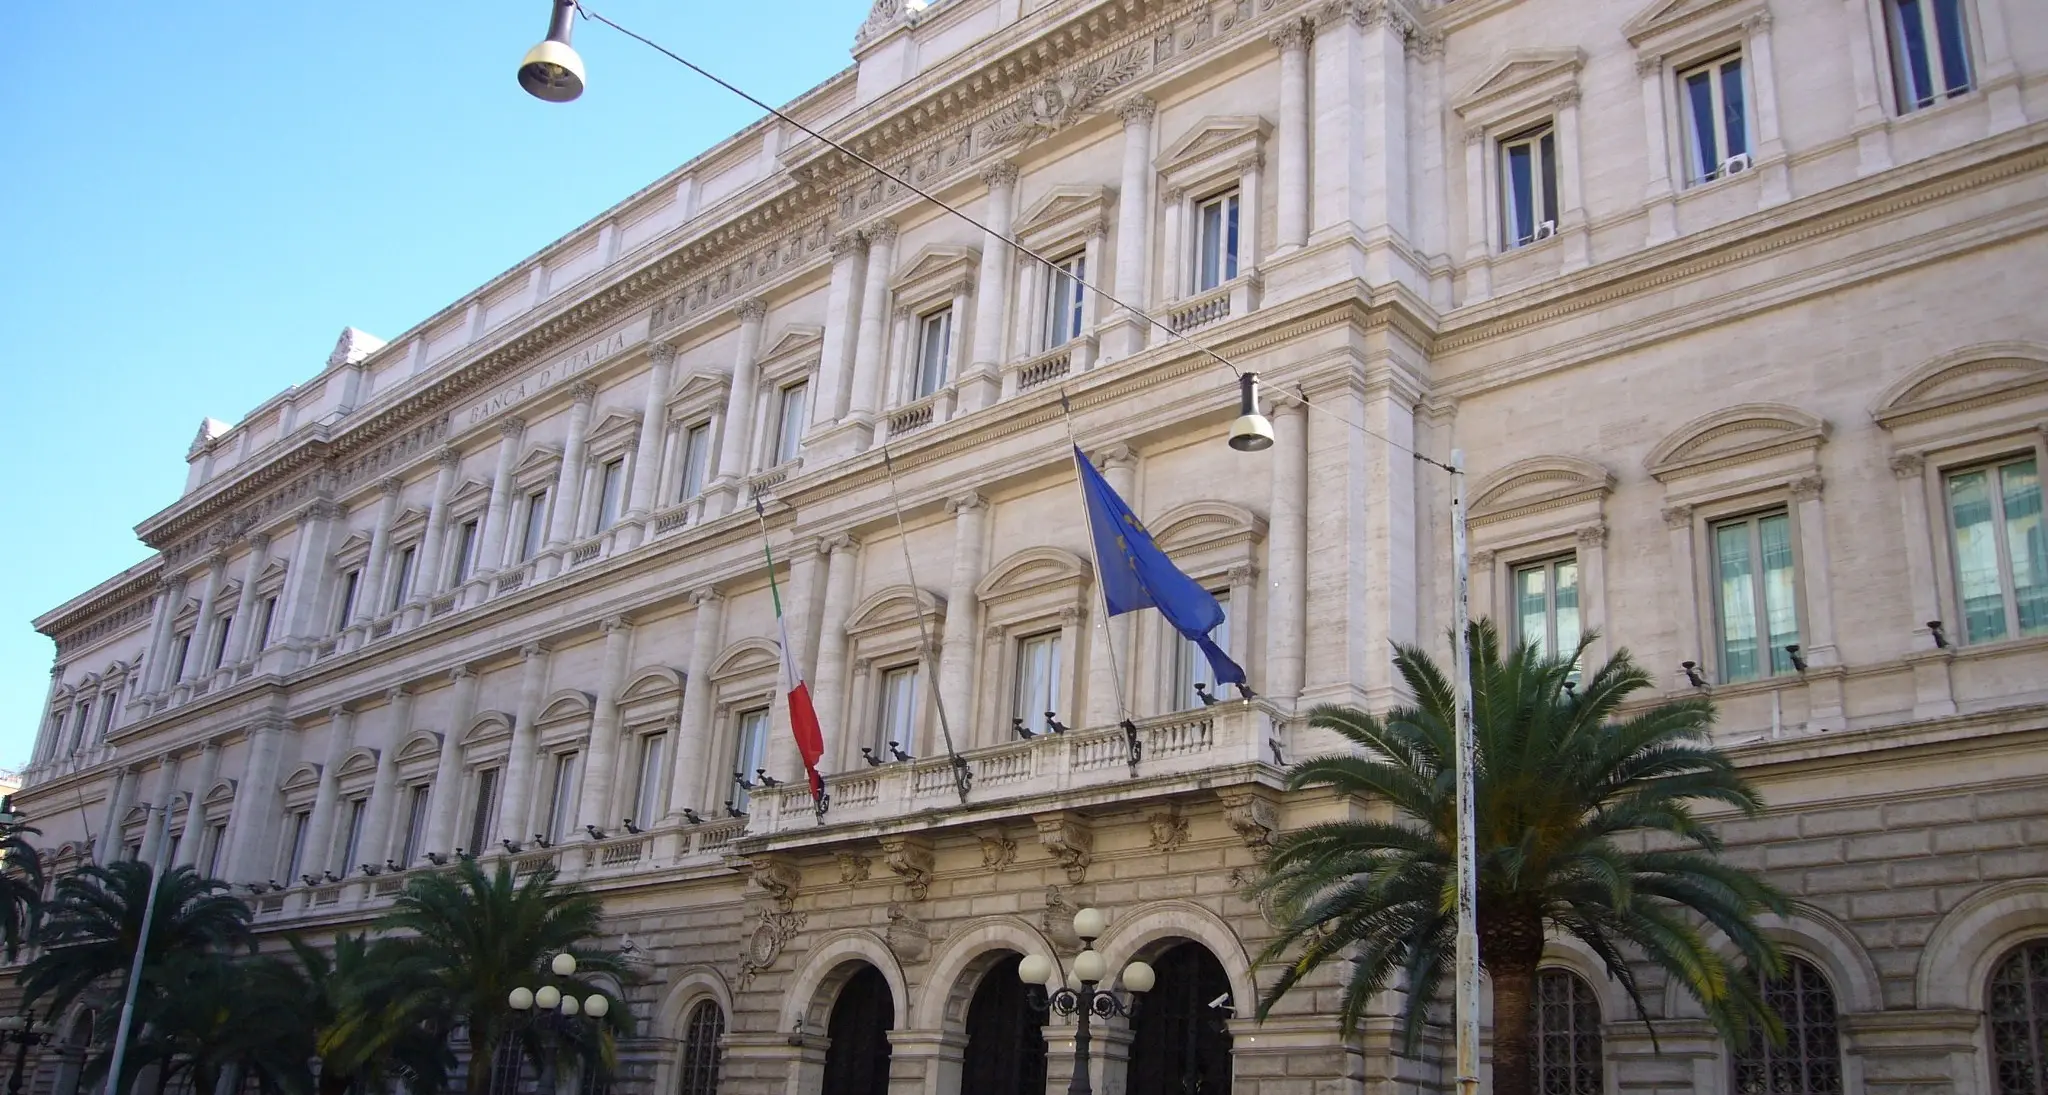 Al verde e senza stipendio, battono cassa a Banca d'Italia